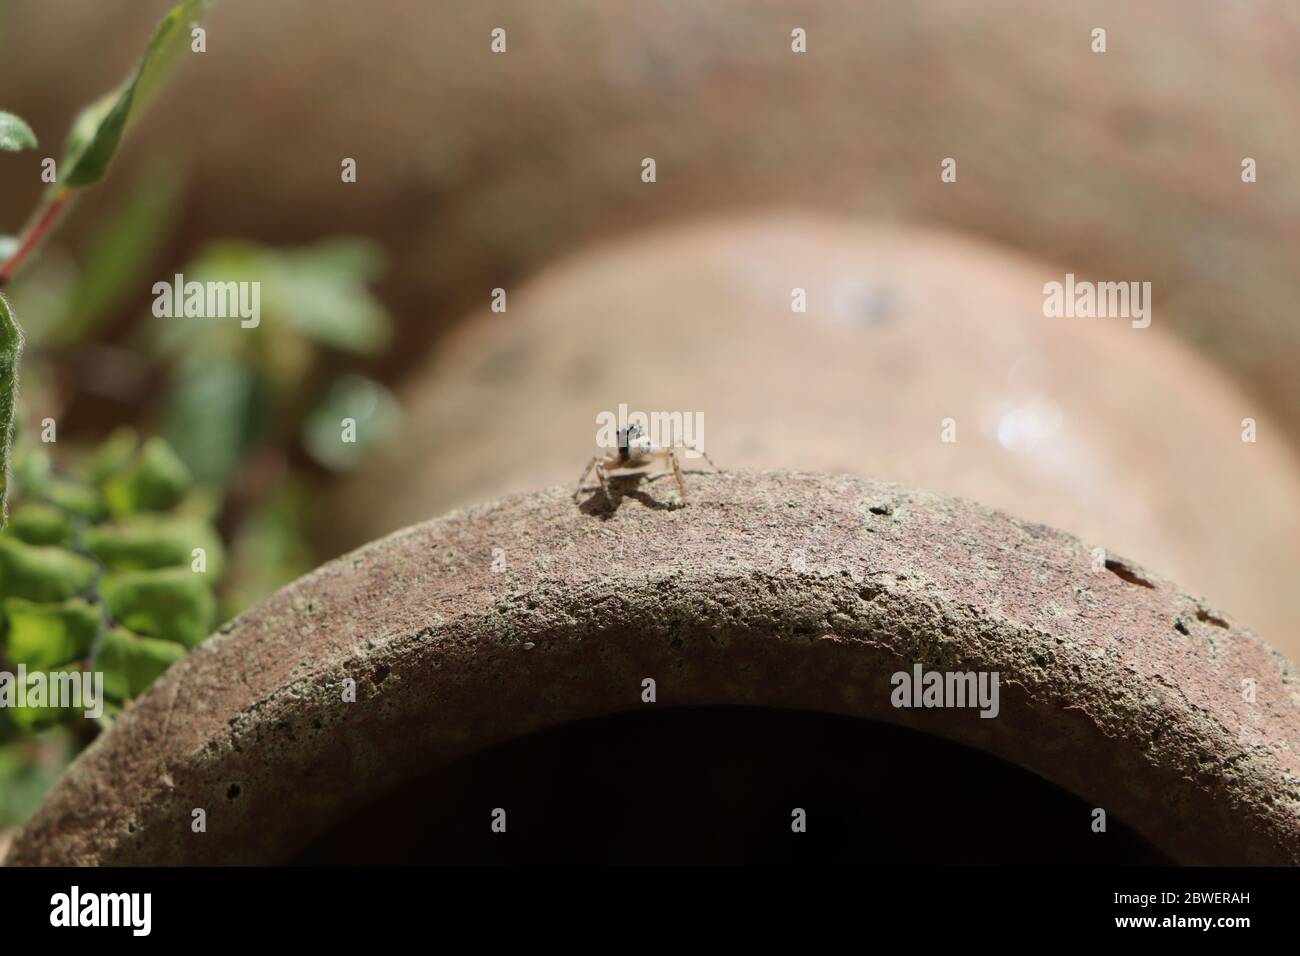 Petite araignée jumpant assise sur un vase Banque D'Images